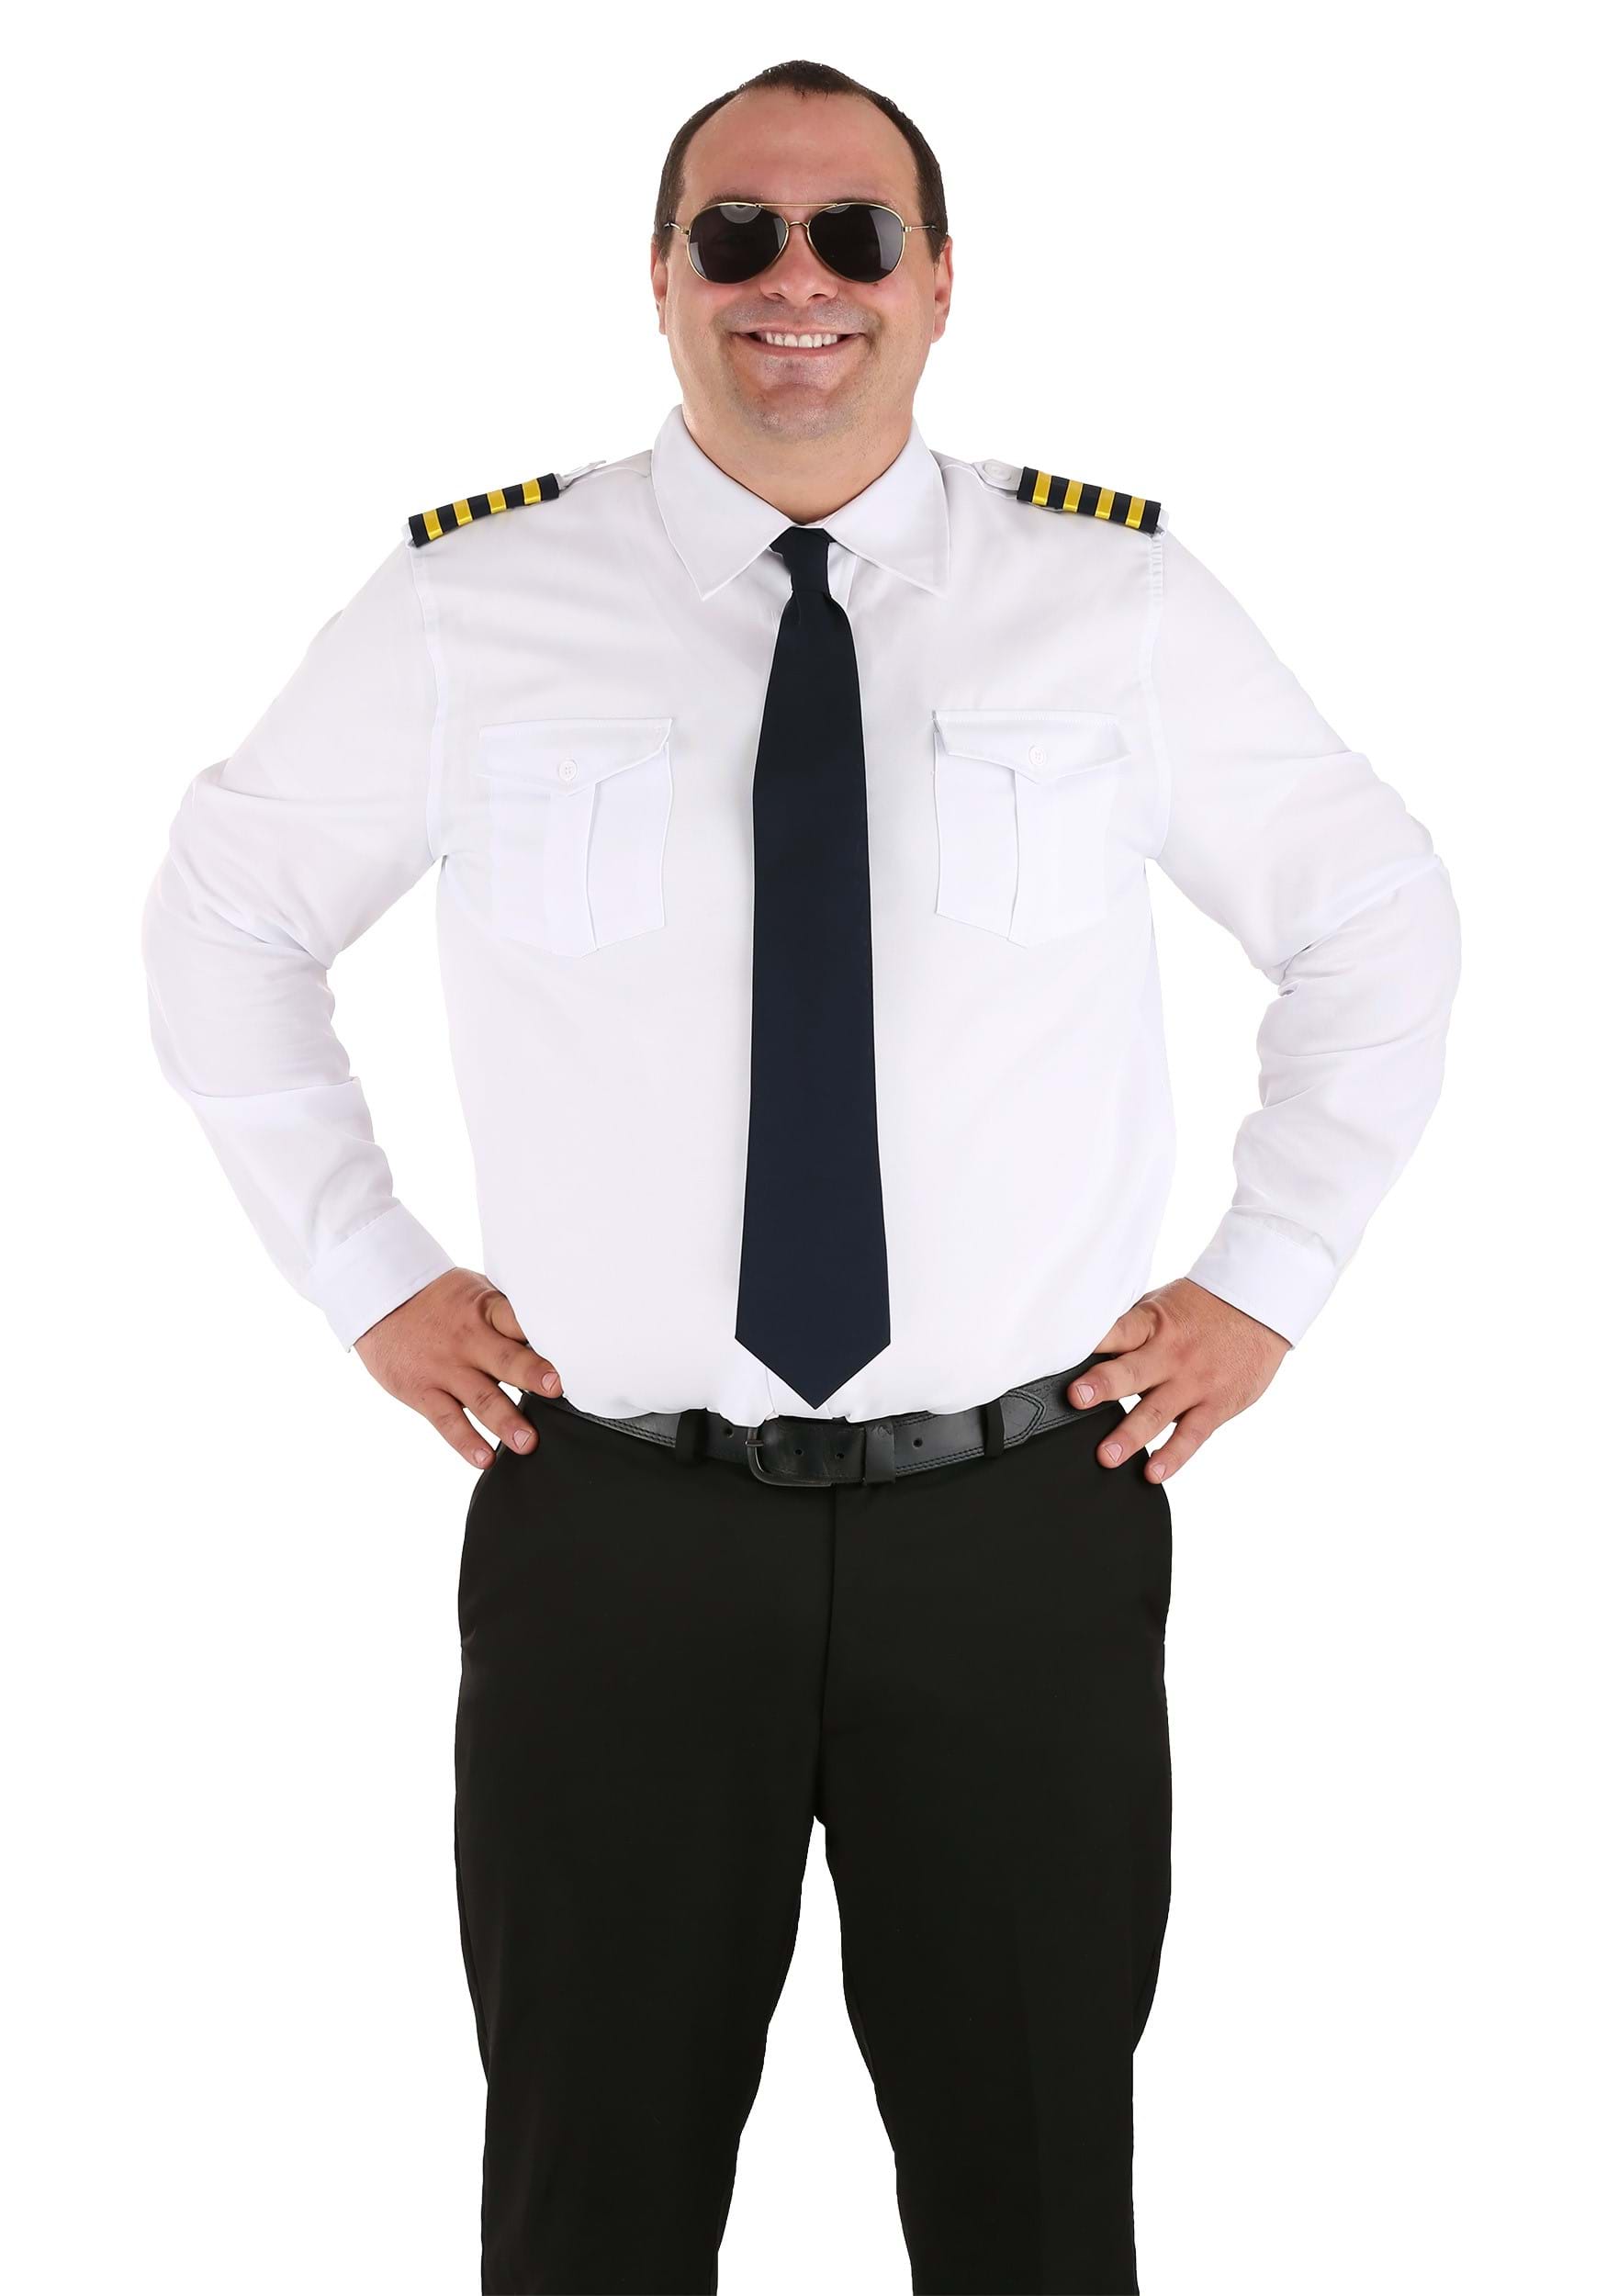 Plus Sizes Pilot Uniform Costume Shirt